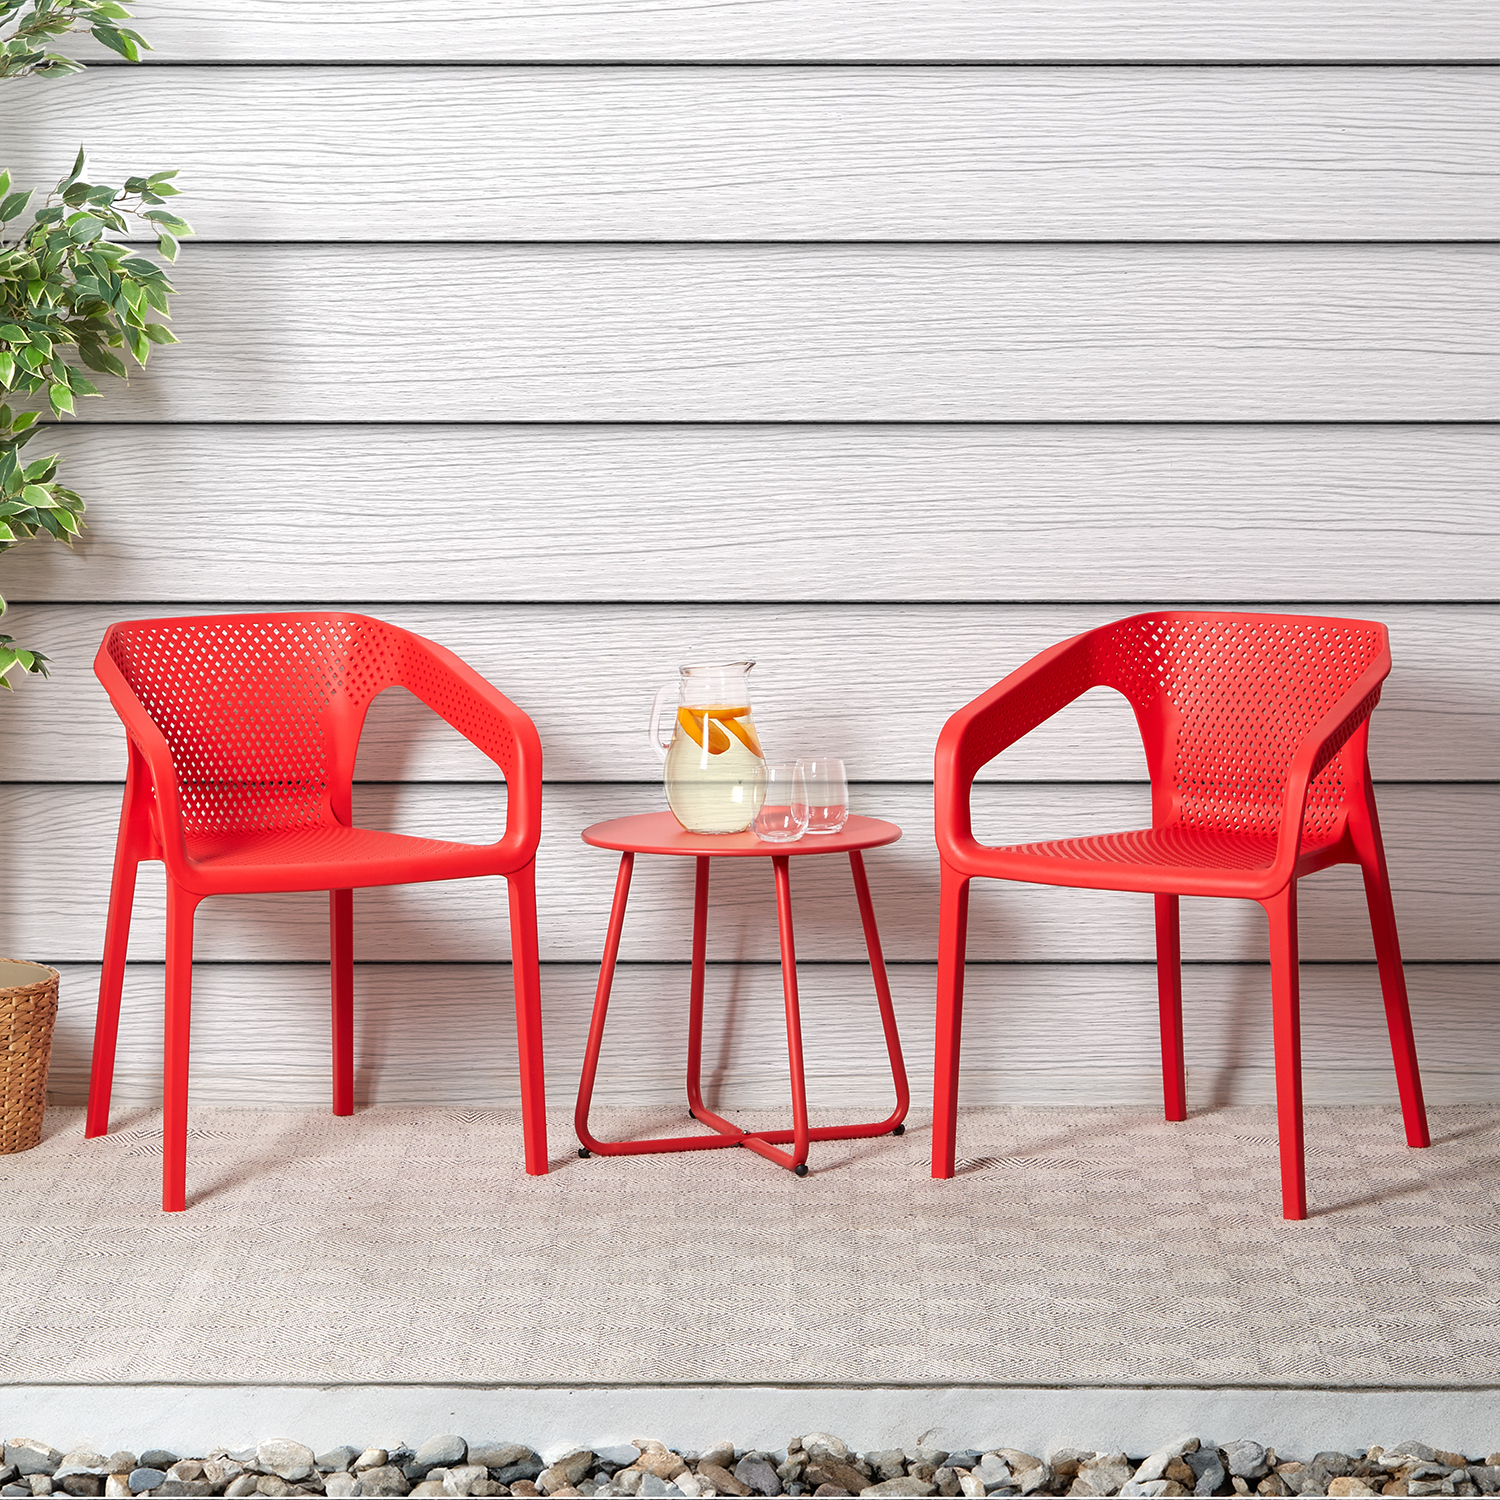 Chaise de jardin avec accoudoirs Rouge Lot de 4 Fauteuils de jardin Plastique Chaises exterieur Chaises empilable